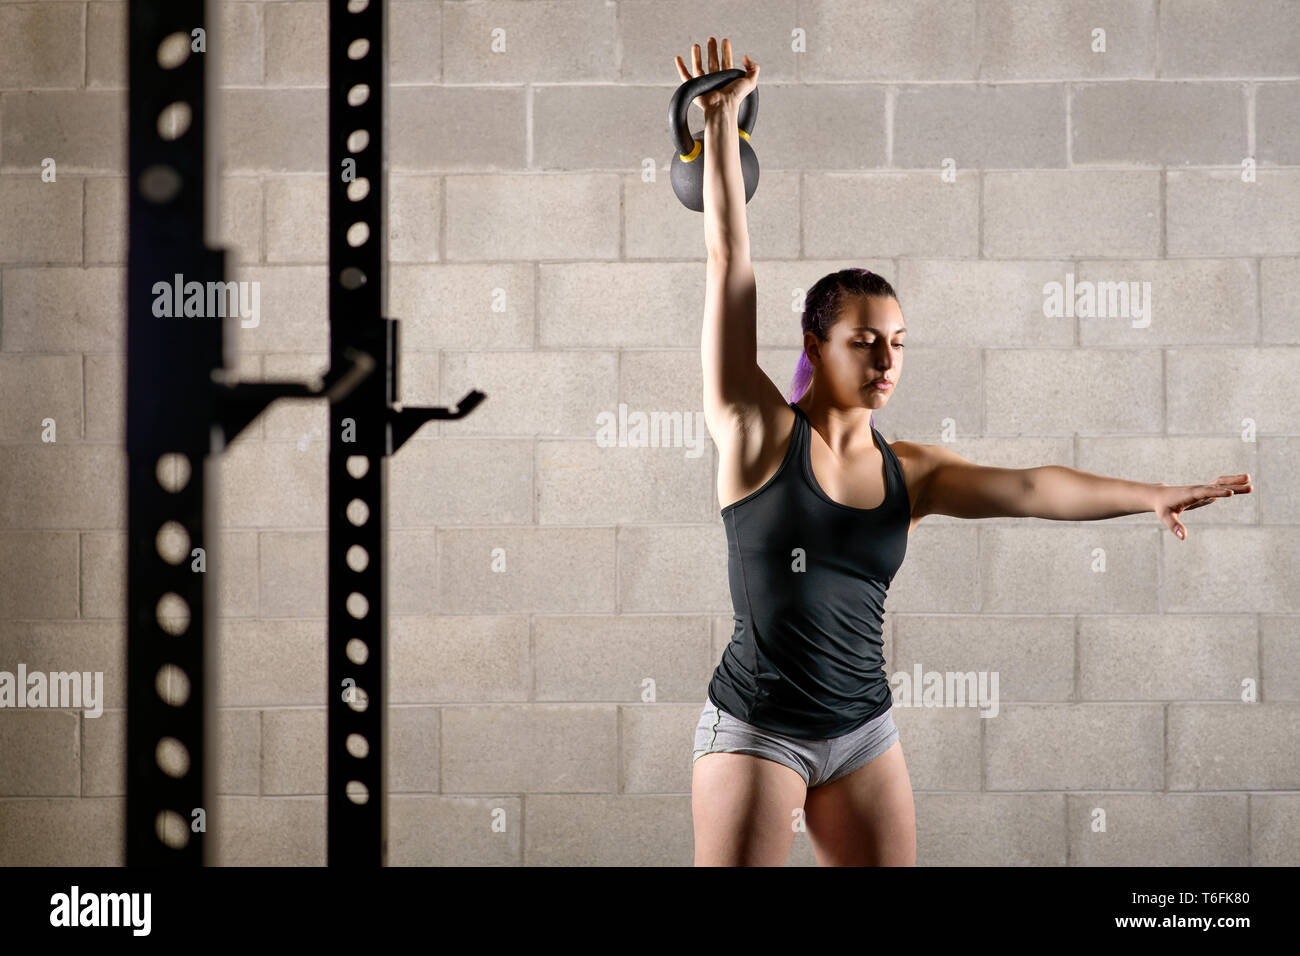 Forte muscolare giovane donna che lavora fuori in una palestra con un peso kettlebell sollevandolo con braccio esteso in una salute e concetto di fitness Foto Stock